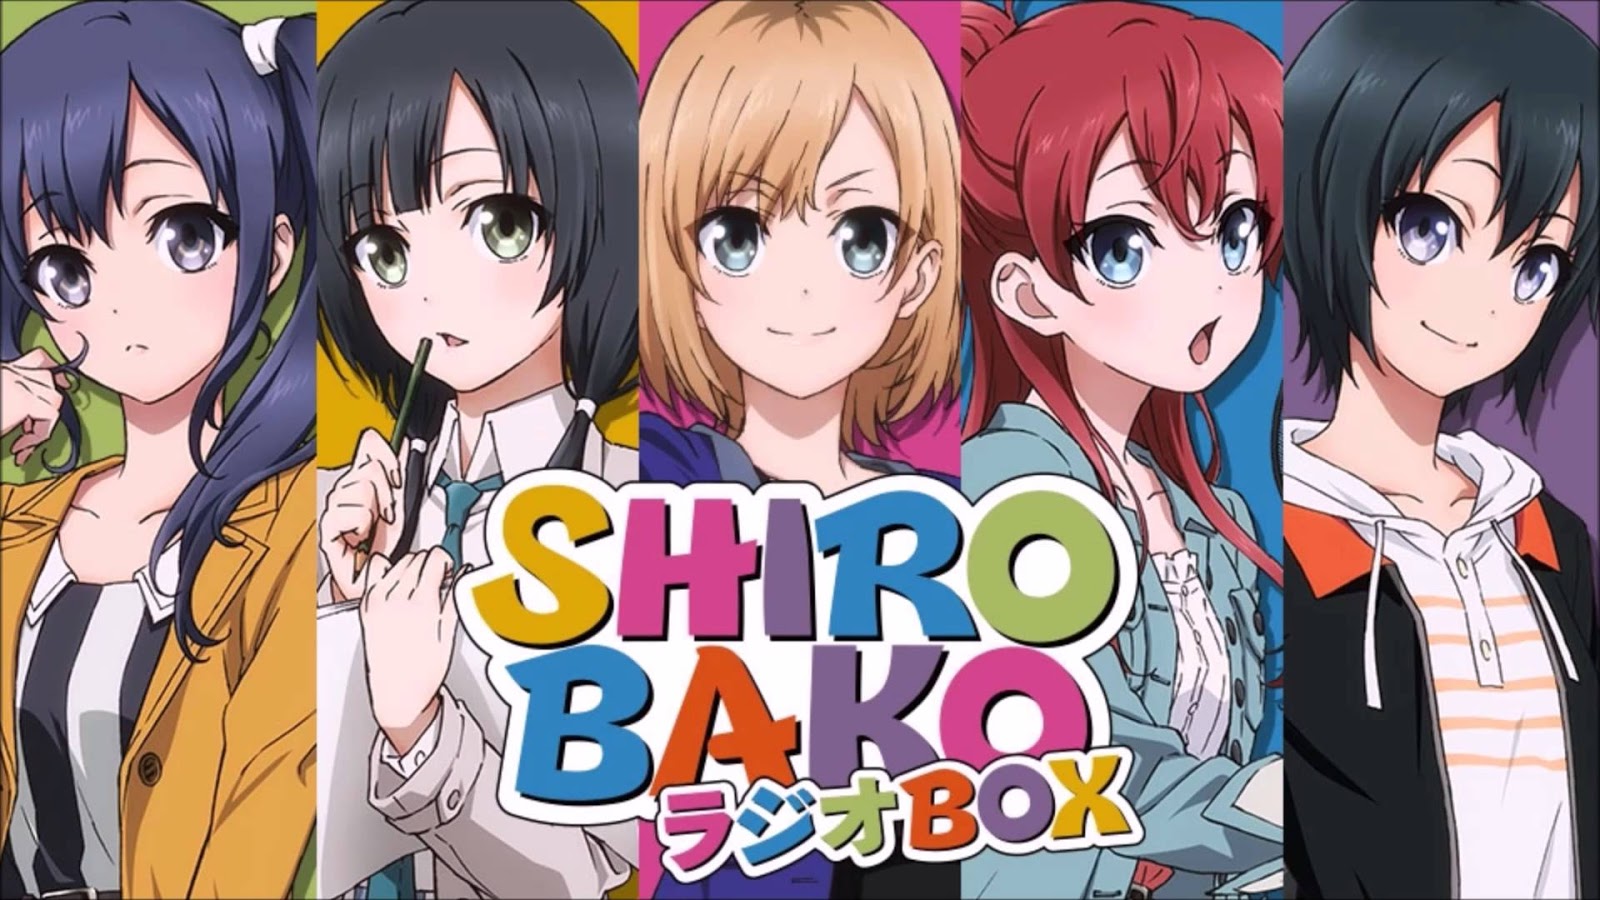 羨慕你們作著彩色的夢 白箱 Shirobako 動畫是怎麼製作的呢